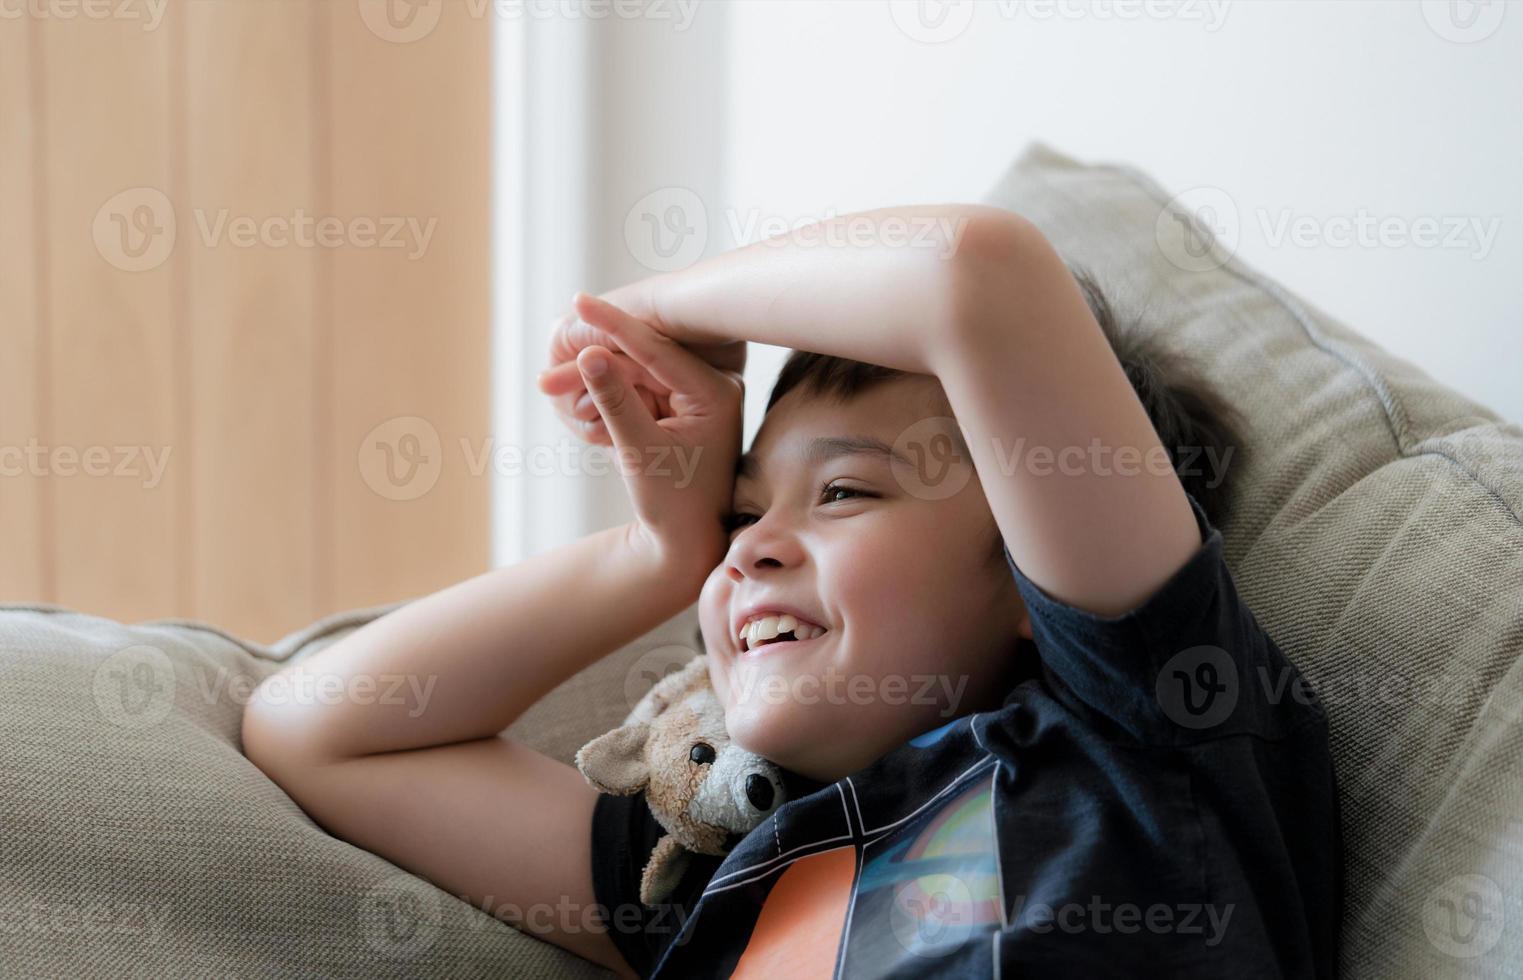 retrata a un niño feliz riéndose, un niño lindo con una gran sonrisa sentado en un sofá divirtiéndose viendo dibujos animados en la televisión, un niño positivo con cara sonriente relajándose disfruta de un tiempo feliz solo el fin de semana. foto